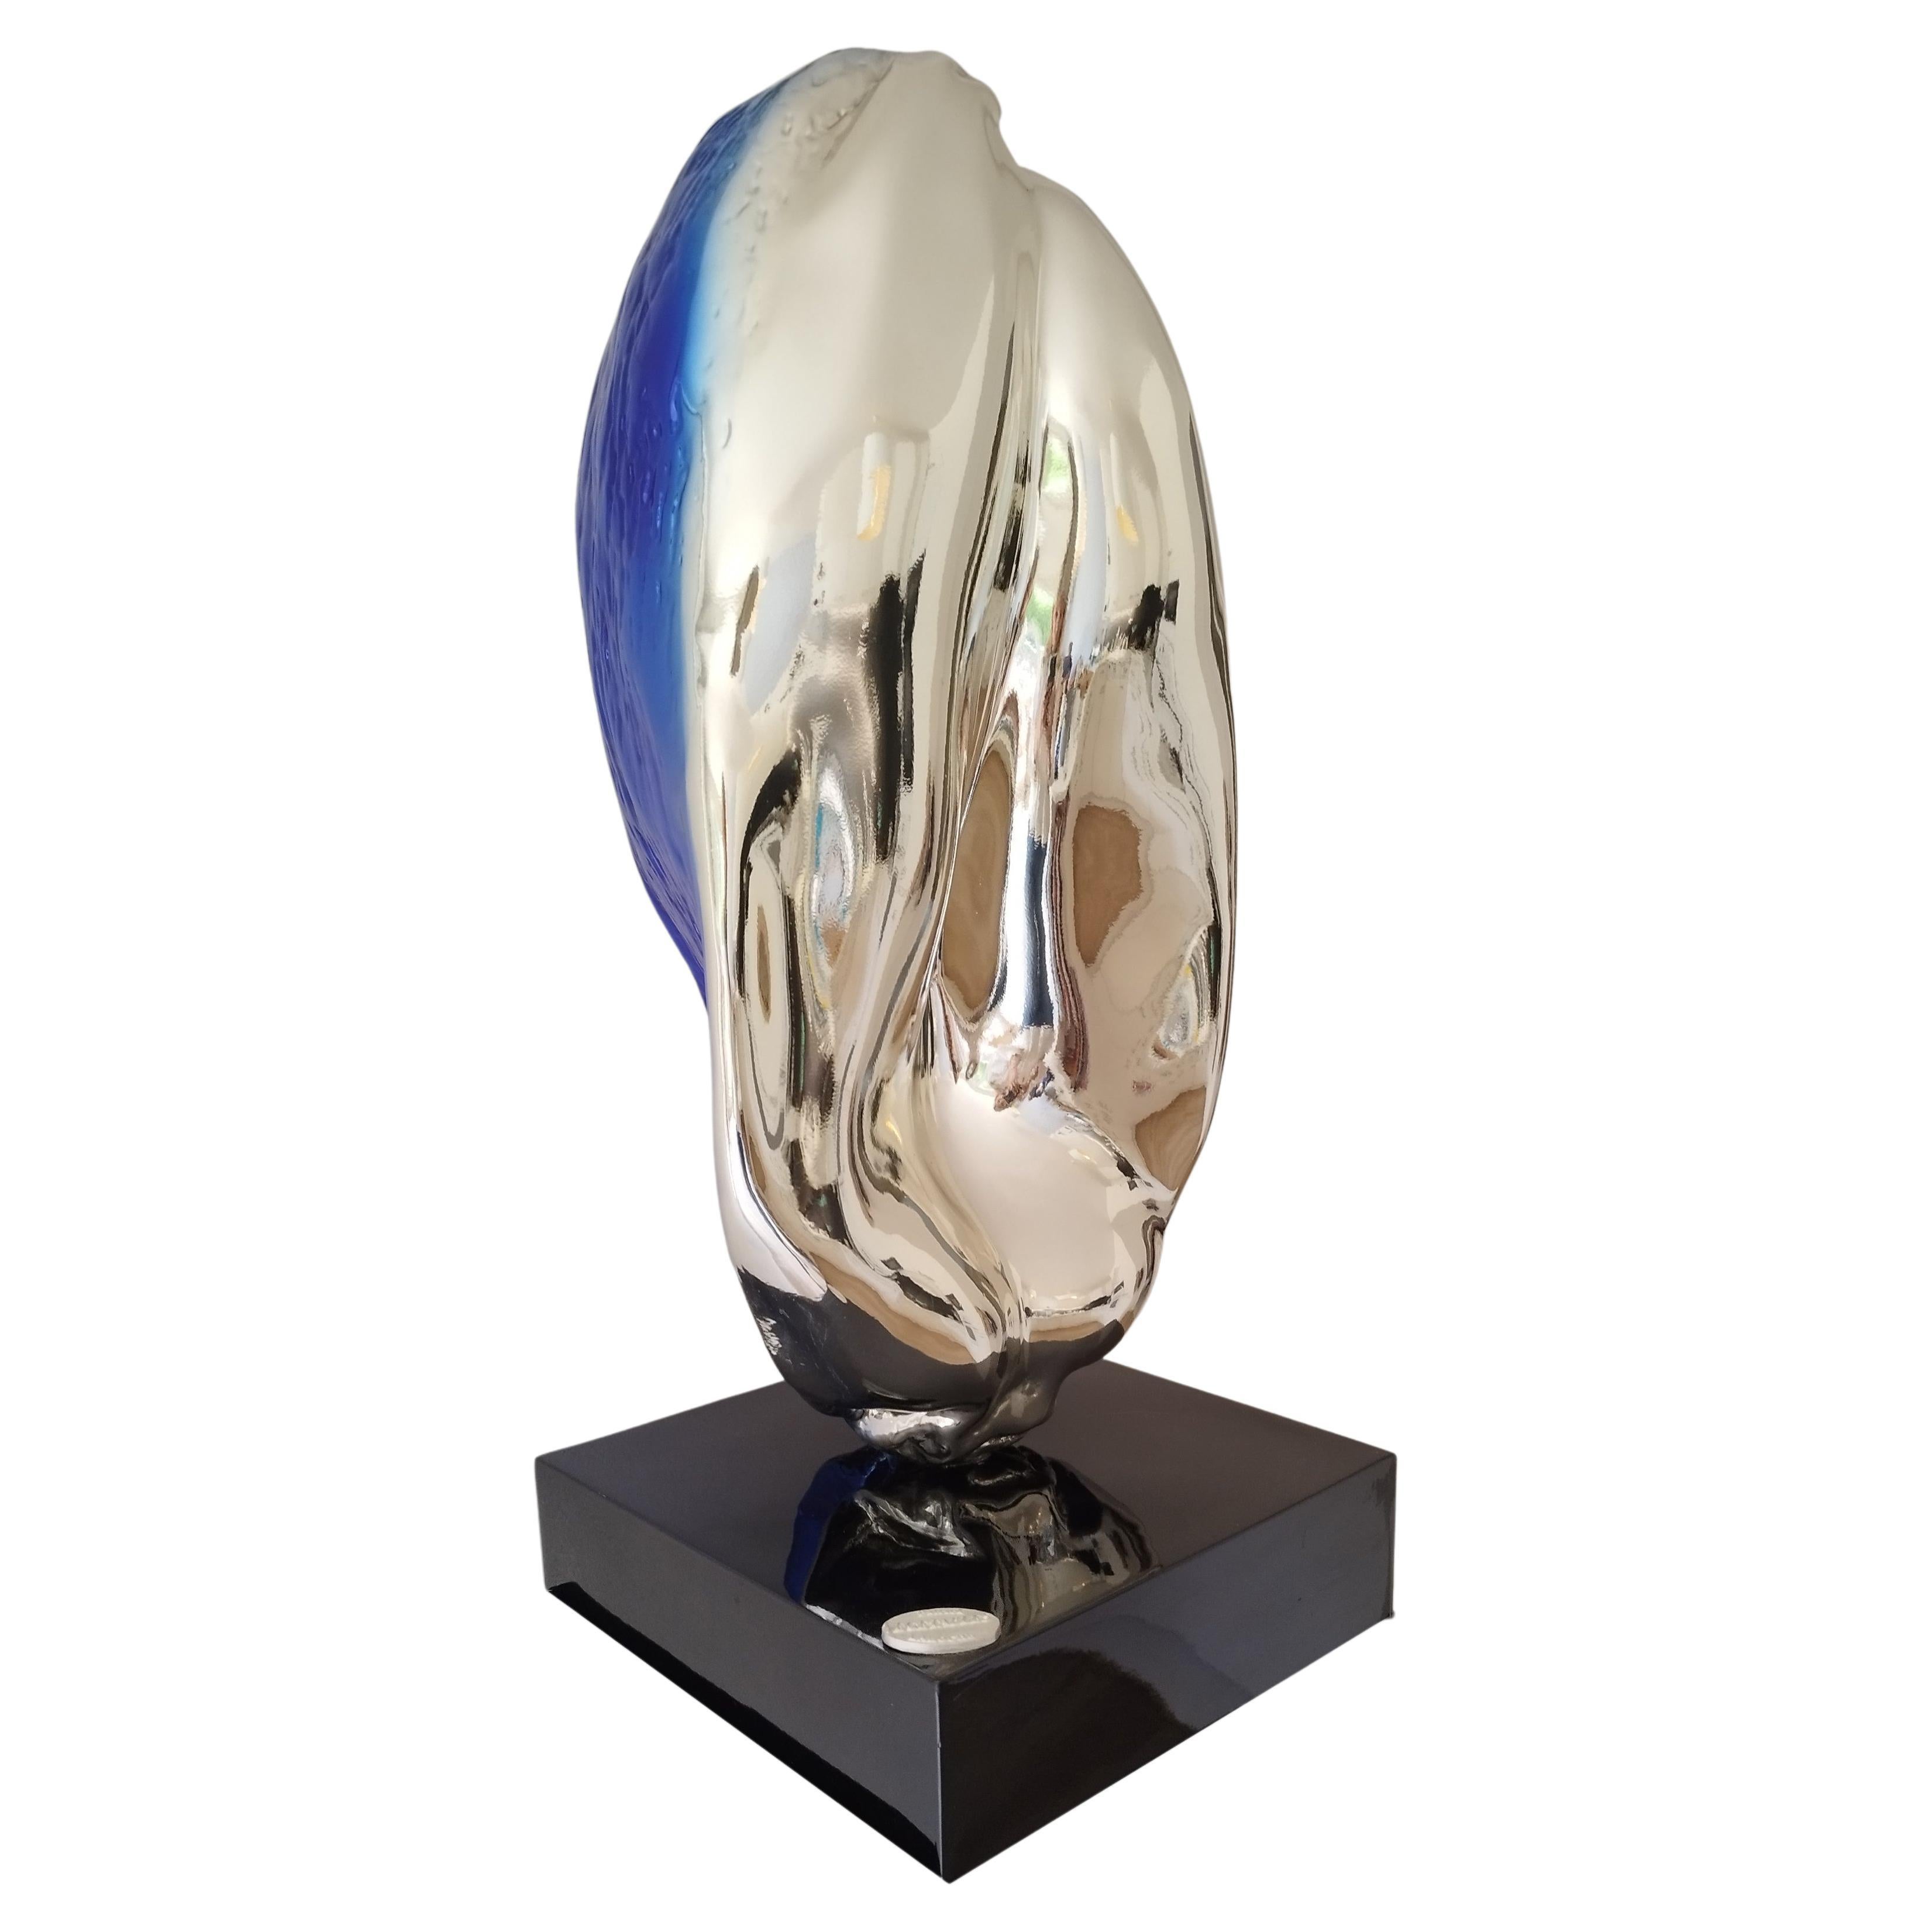  Noyer bleu en bronze polychrome par Patrick LAROCHE Sculpteur Designer